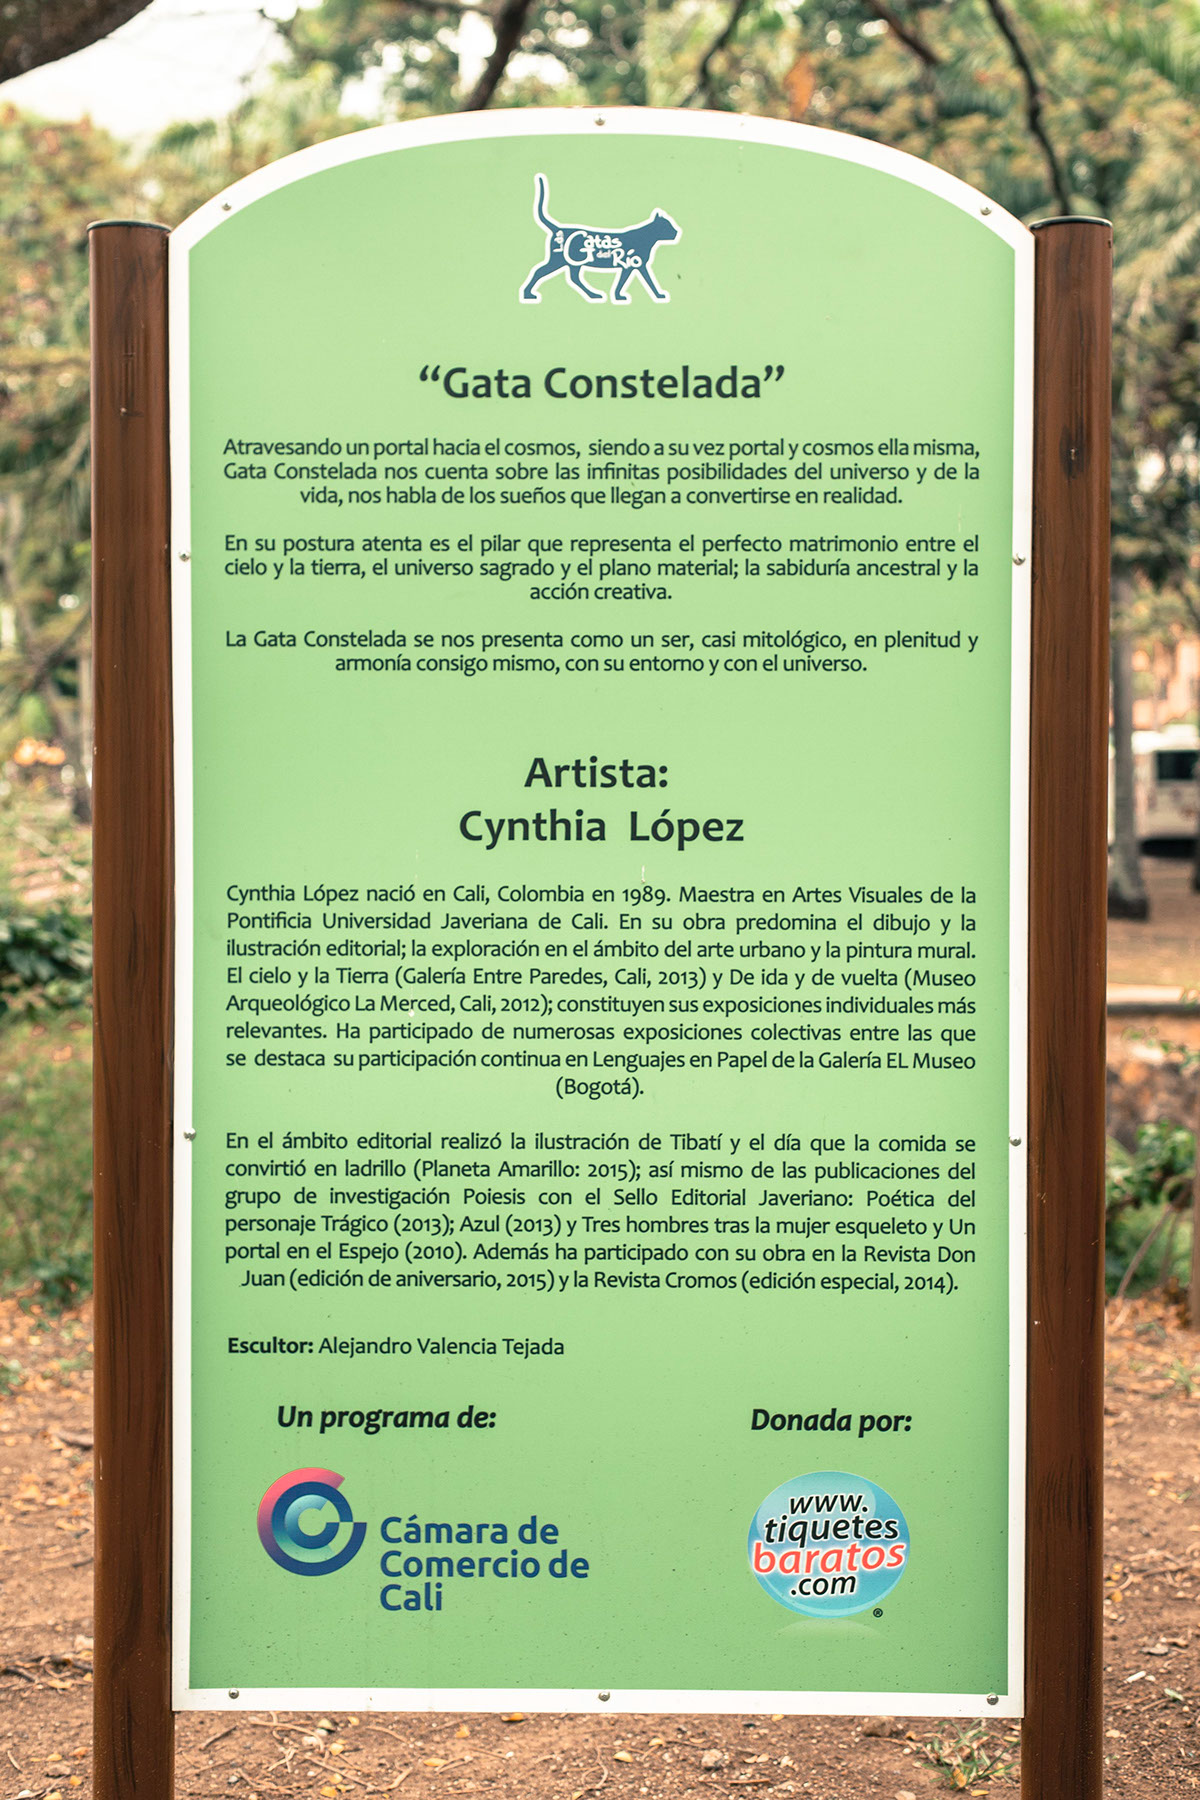 #camaradecomerciodecali #sculpture #calico #cynthialopez #lasgatasdelrio #boulevarddelrio